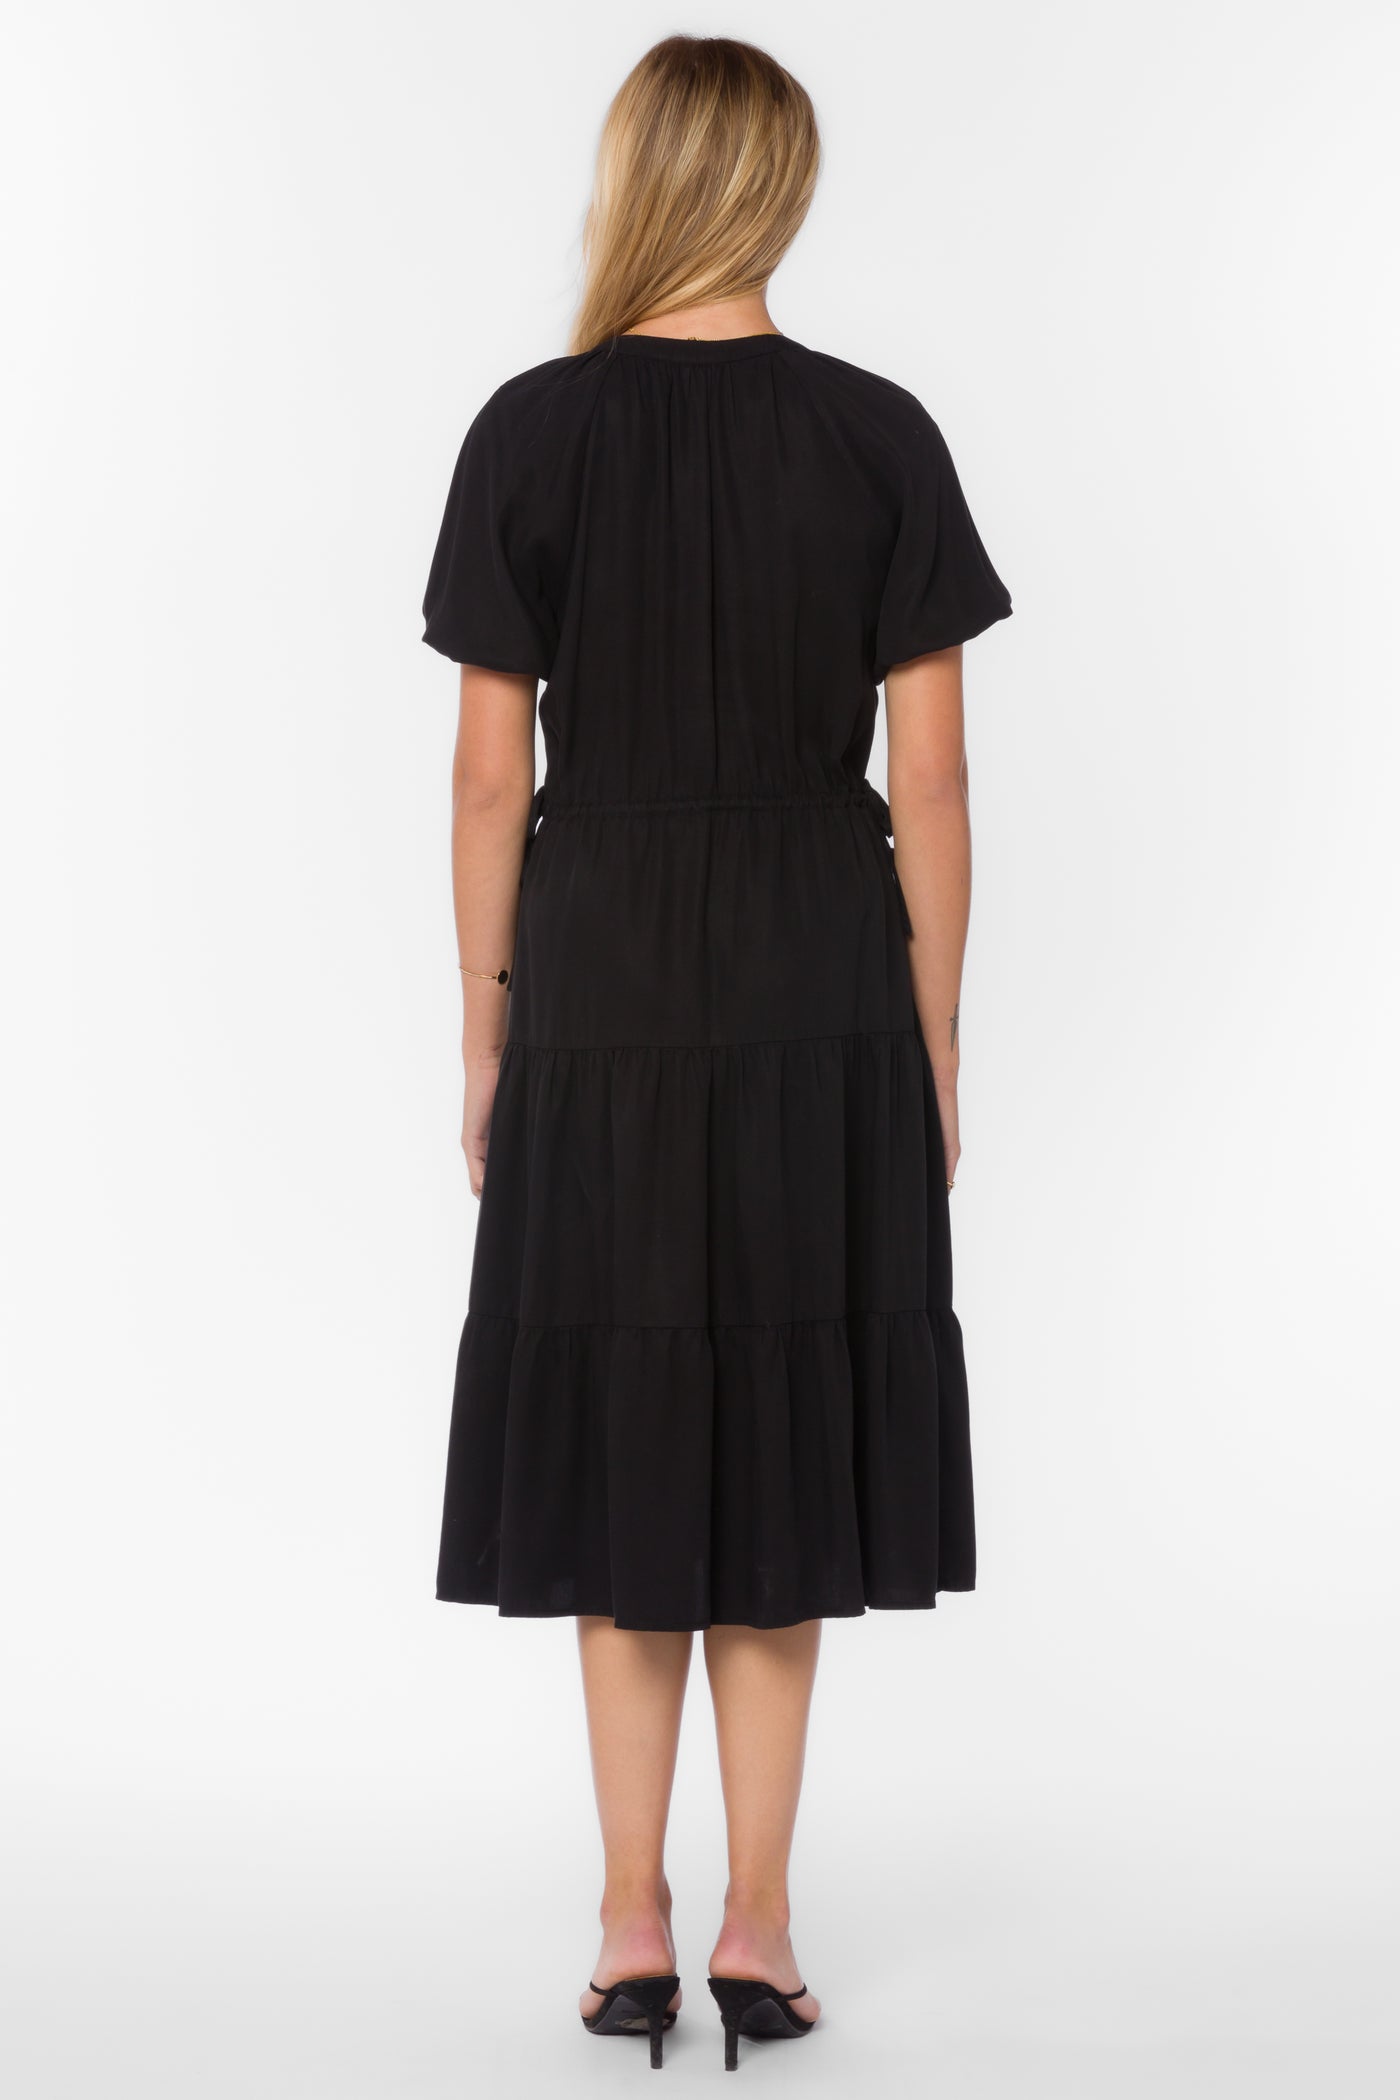 Cassie Black Dress - Dresses - Velvet Heart Clothing